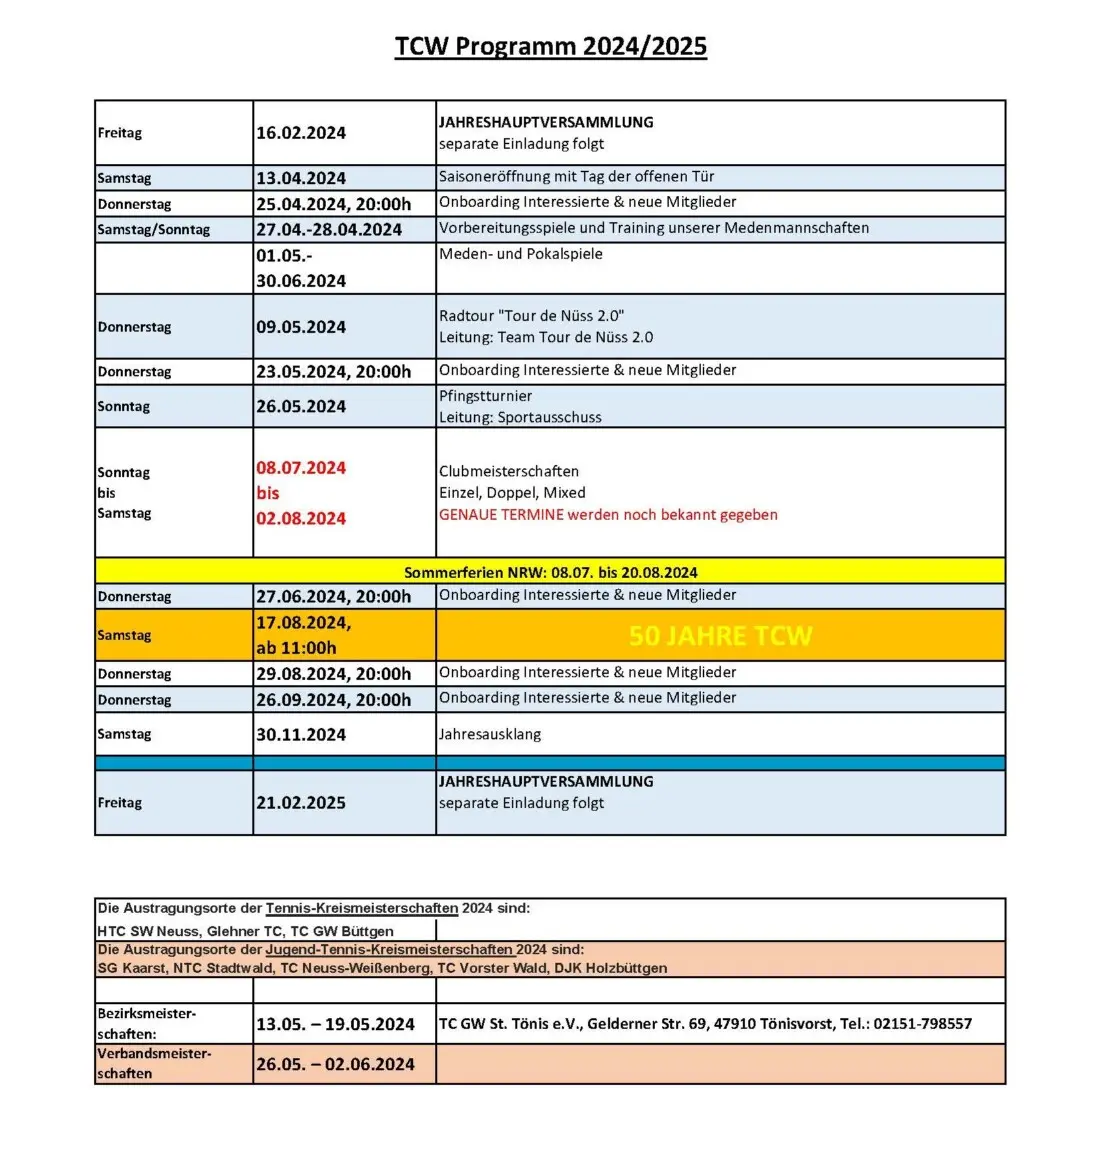 Veranstaltungen und Termin im TCW 2024/2025